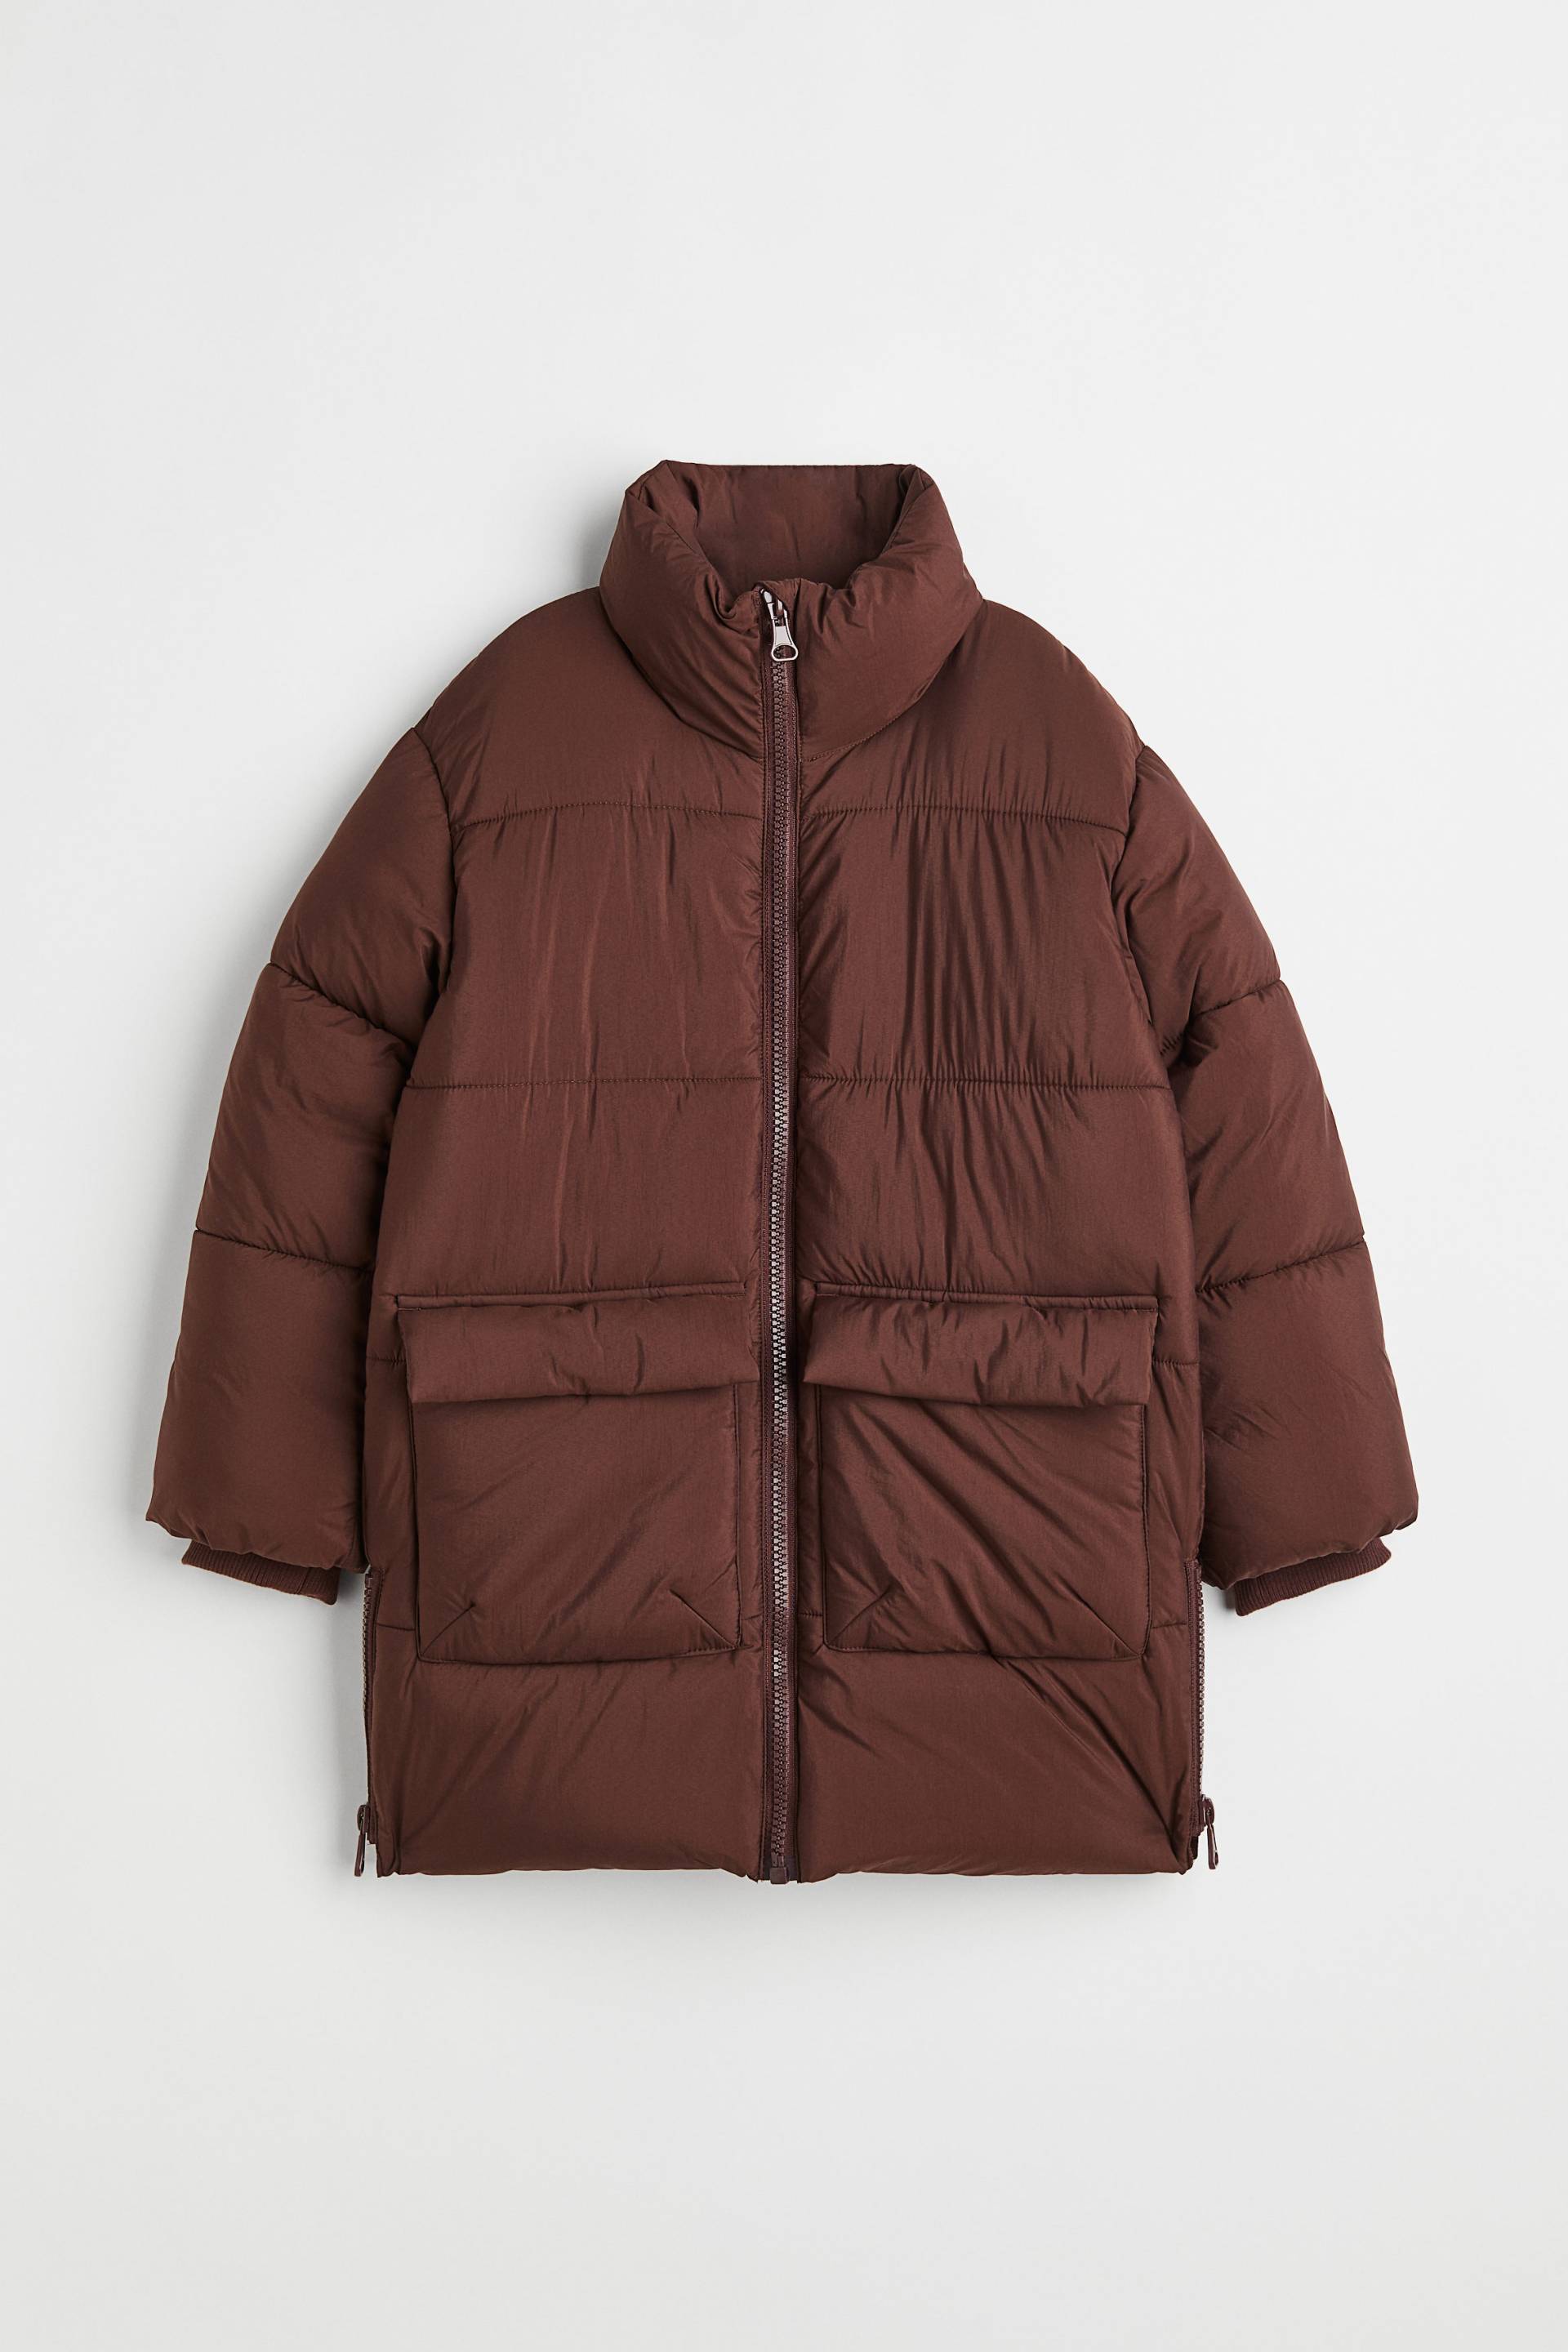 H&M Puffer Jacket mit Zippern Dunkelbraun, Jacken & Mäntel in Größe 158. Farbe: Dark brown von H&M